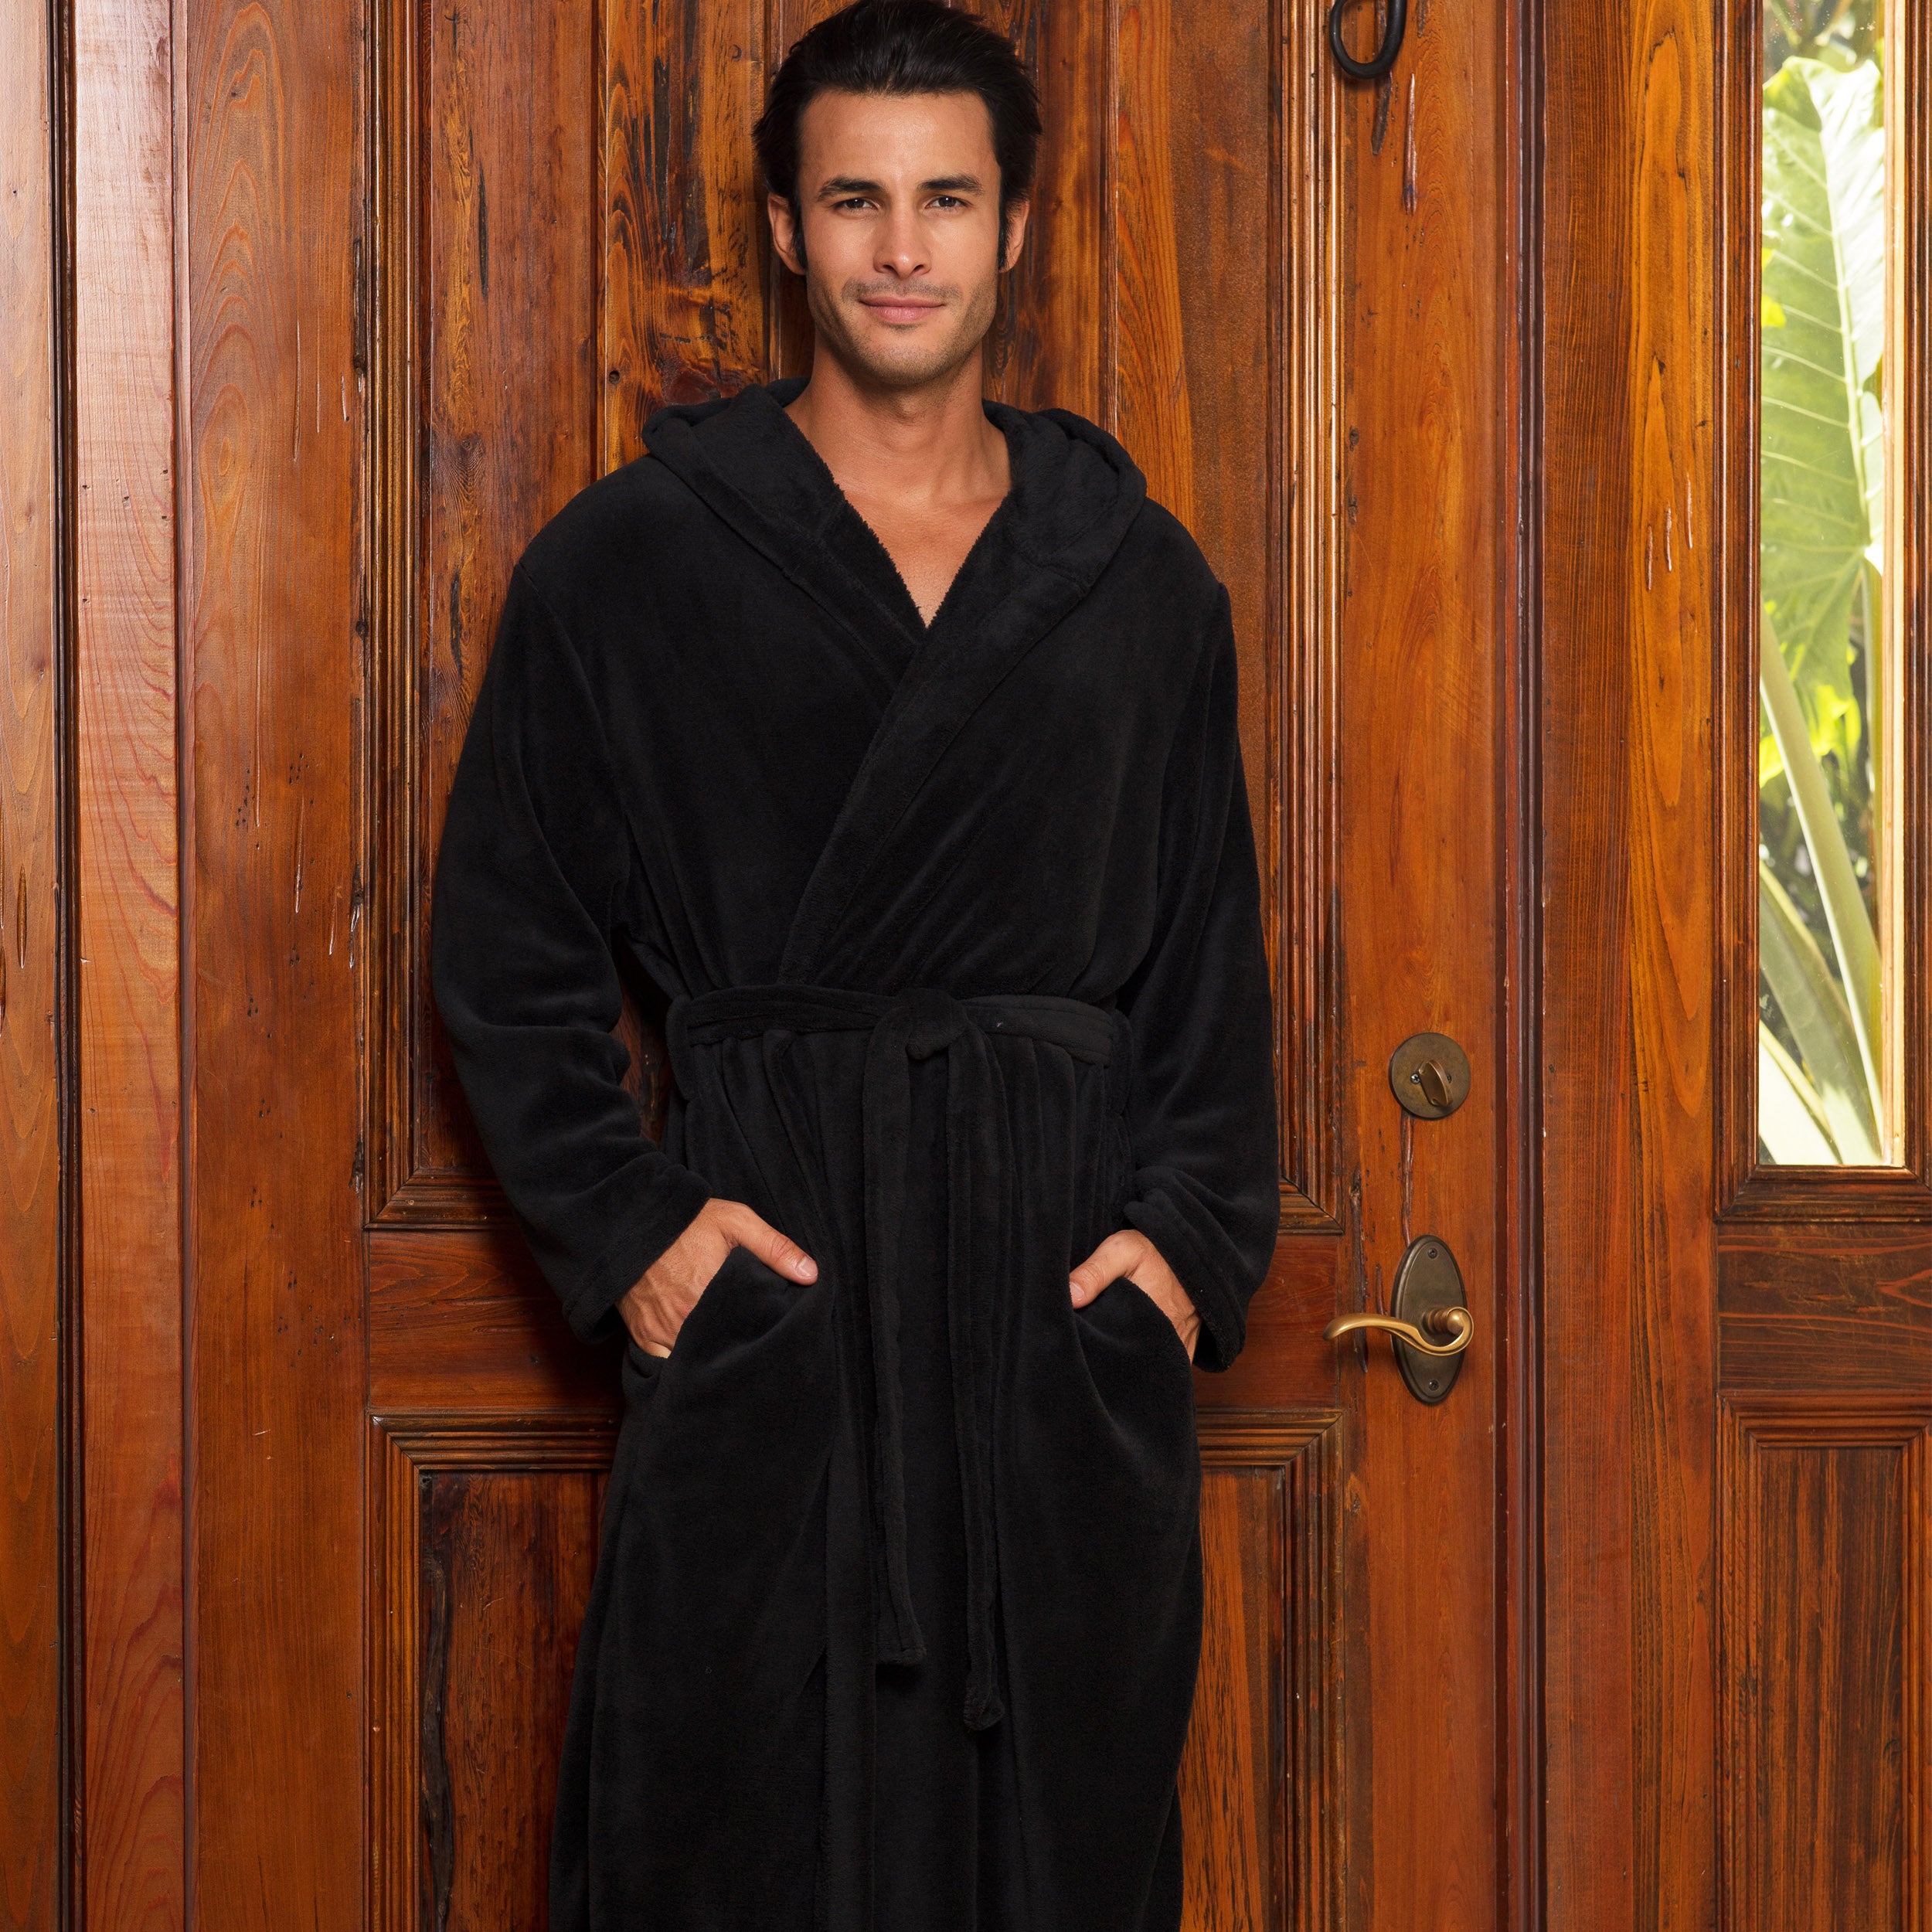 Men's Lightweight Fleece Robe with Hood, Soft Bathrobe – Alexander